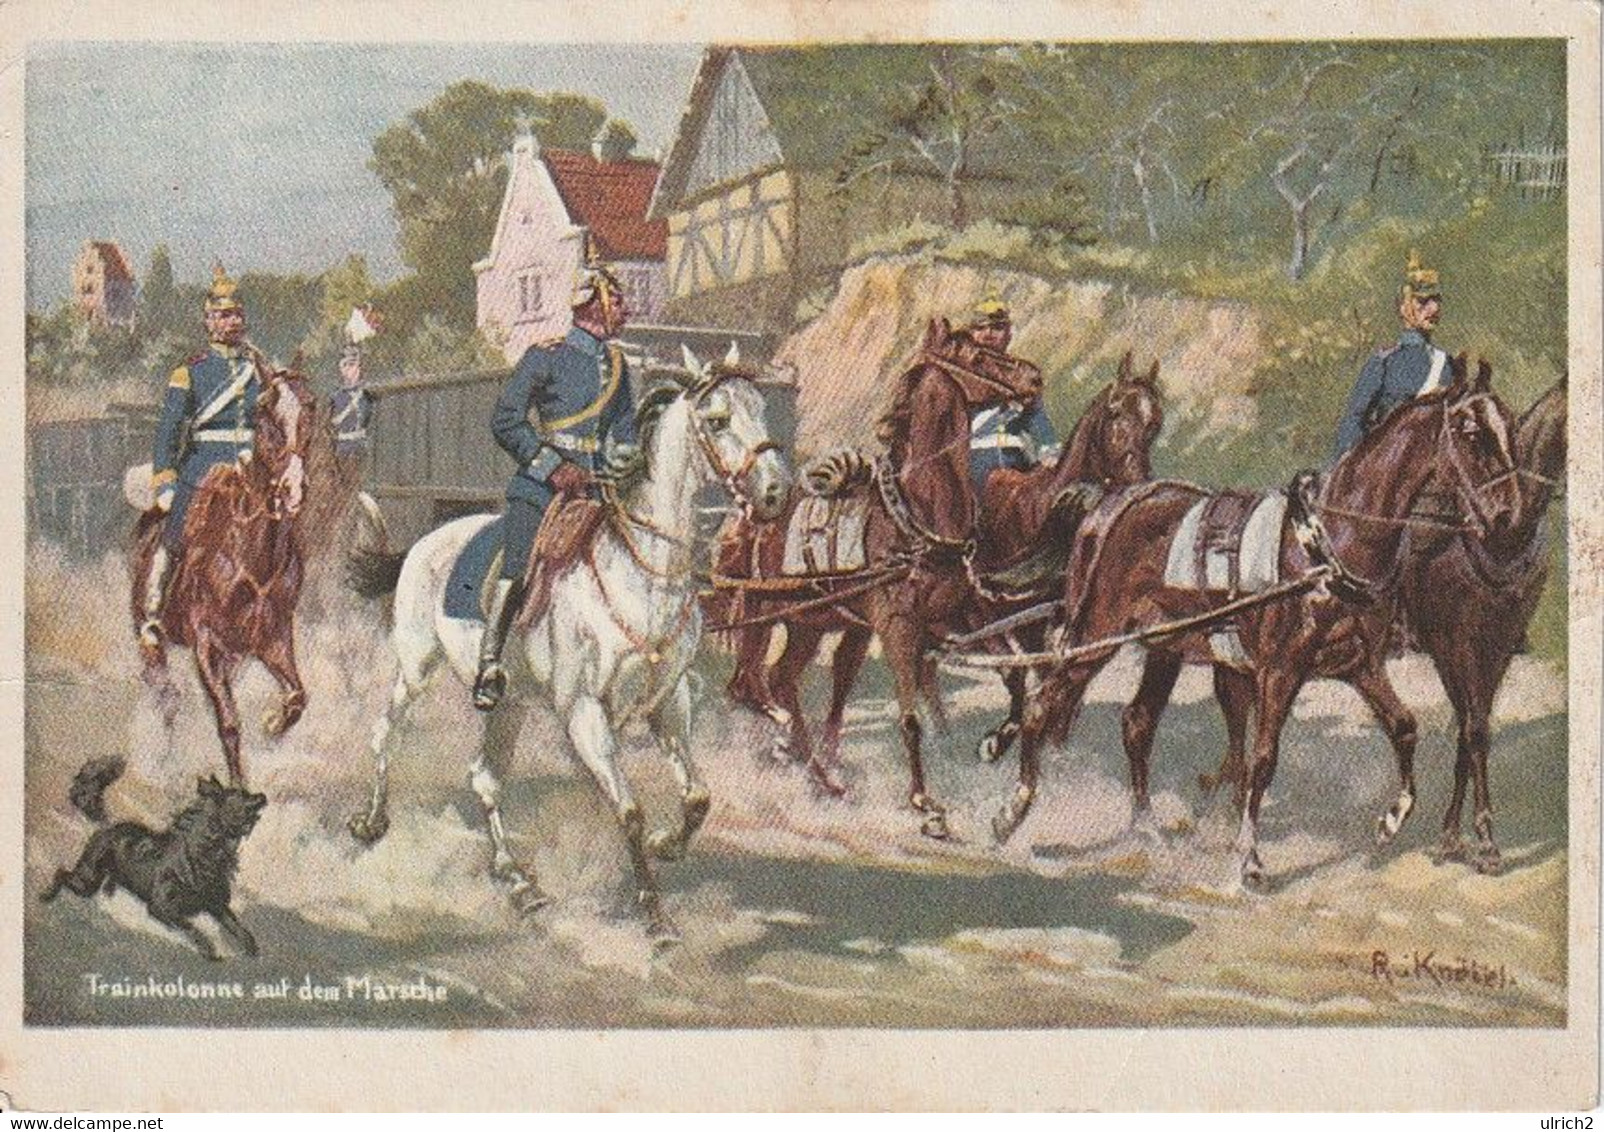 AK Trainkolonne Auf Dem Marsche - Dt. Reich - Künstlerkarte R. Knötel - Preuß. Landeskriegerverband - Ca. 1910 (60519) - Uniformes